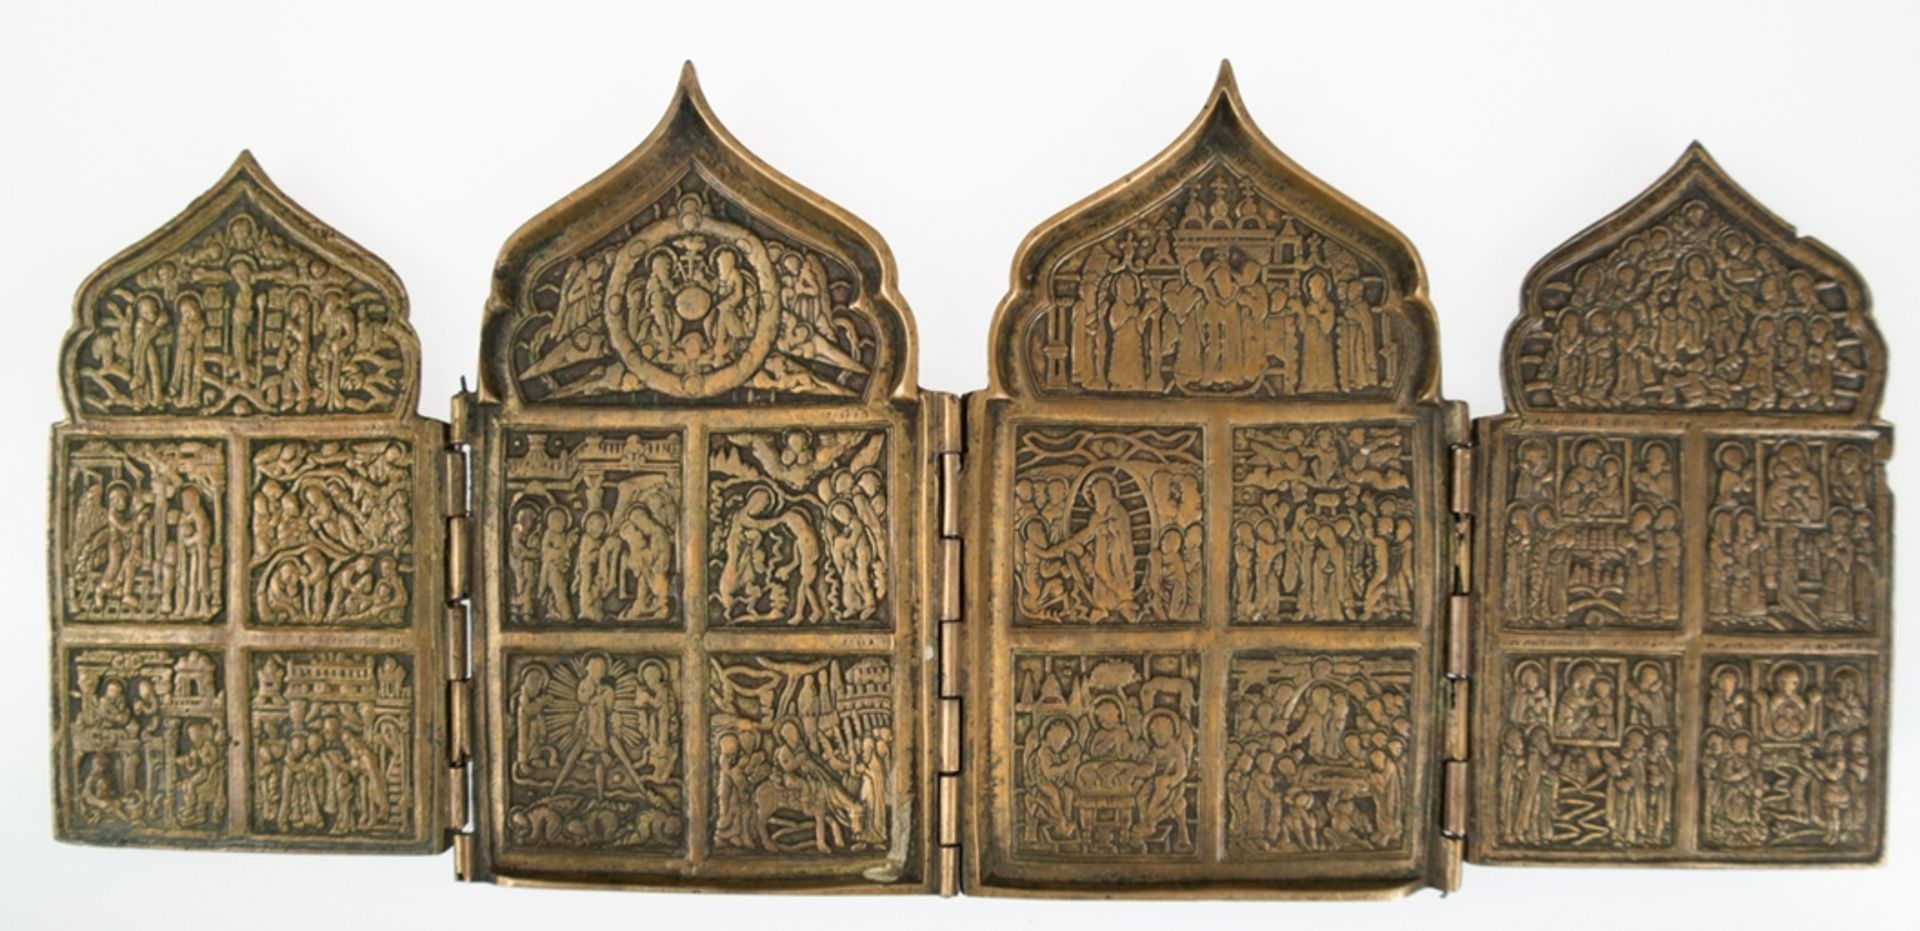 Reiseikone, Bronze, 19. Jh., Tetraptychon, 4-flügelig, klappbar, ges. 16x36,5 cm